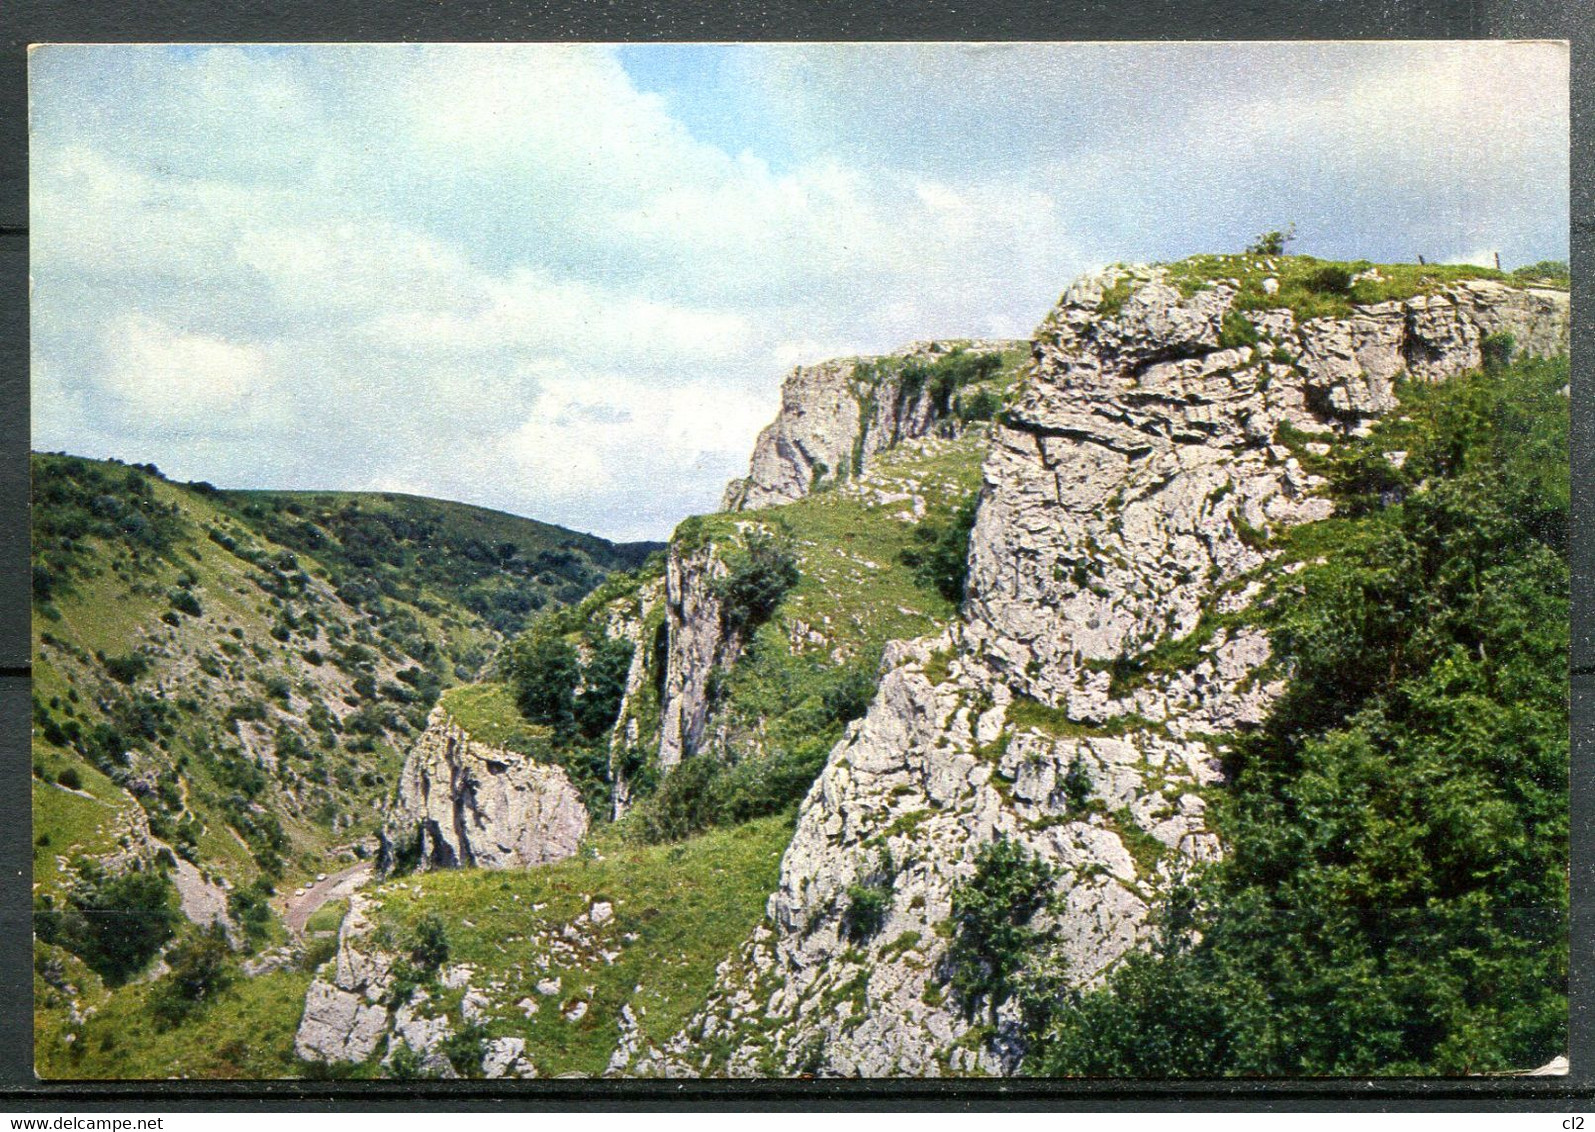 The Cheddar Gorge - Cheddar